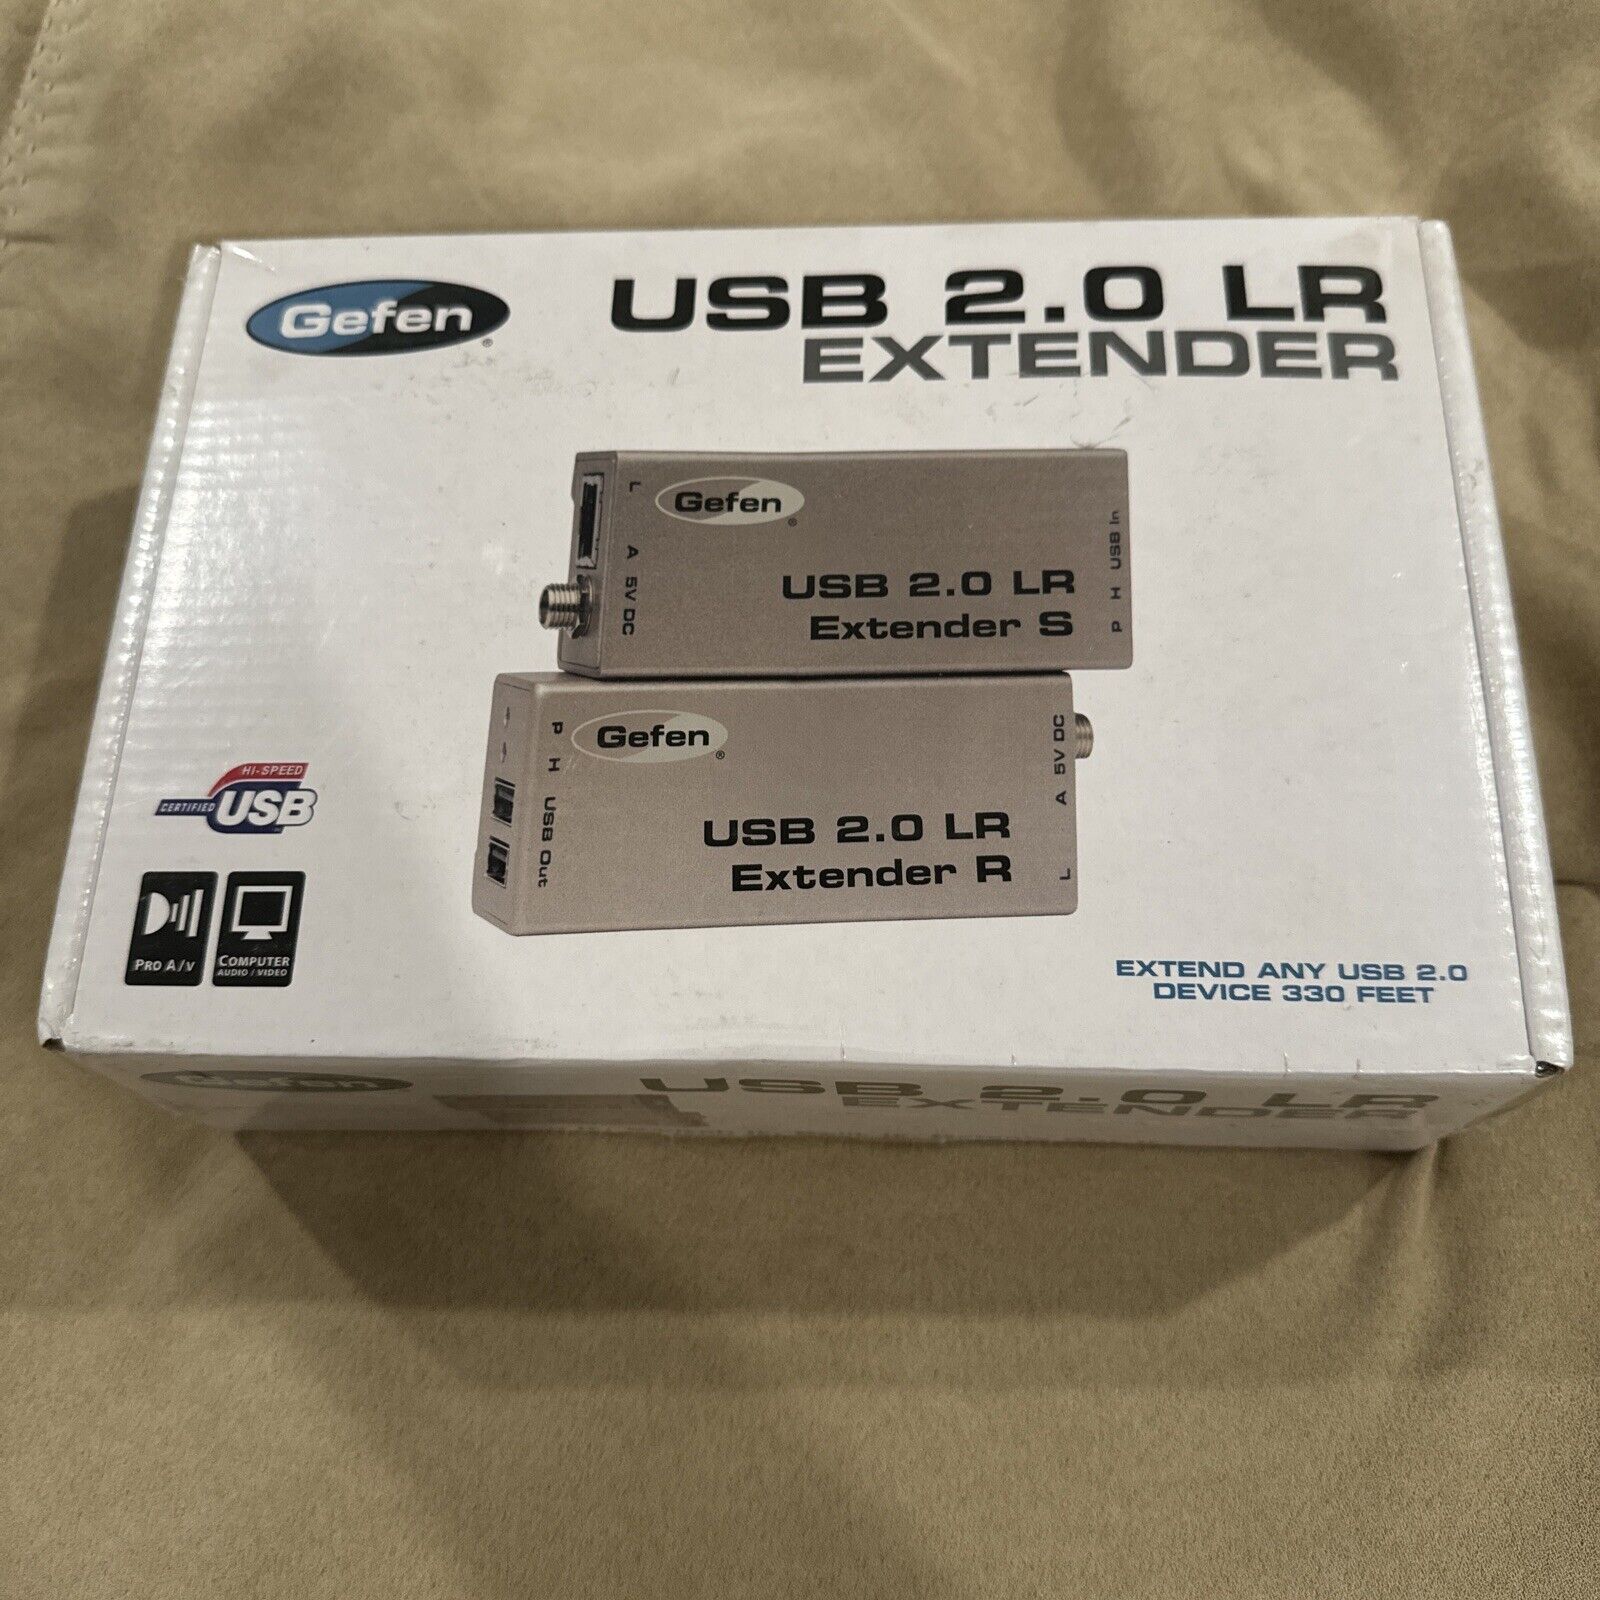 Gefen USB 2.0 LR extender